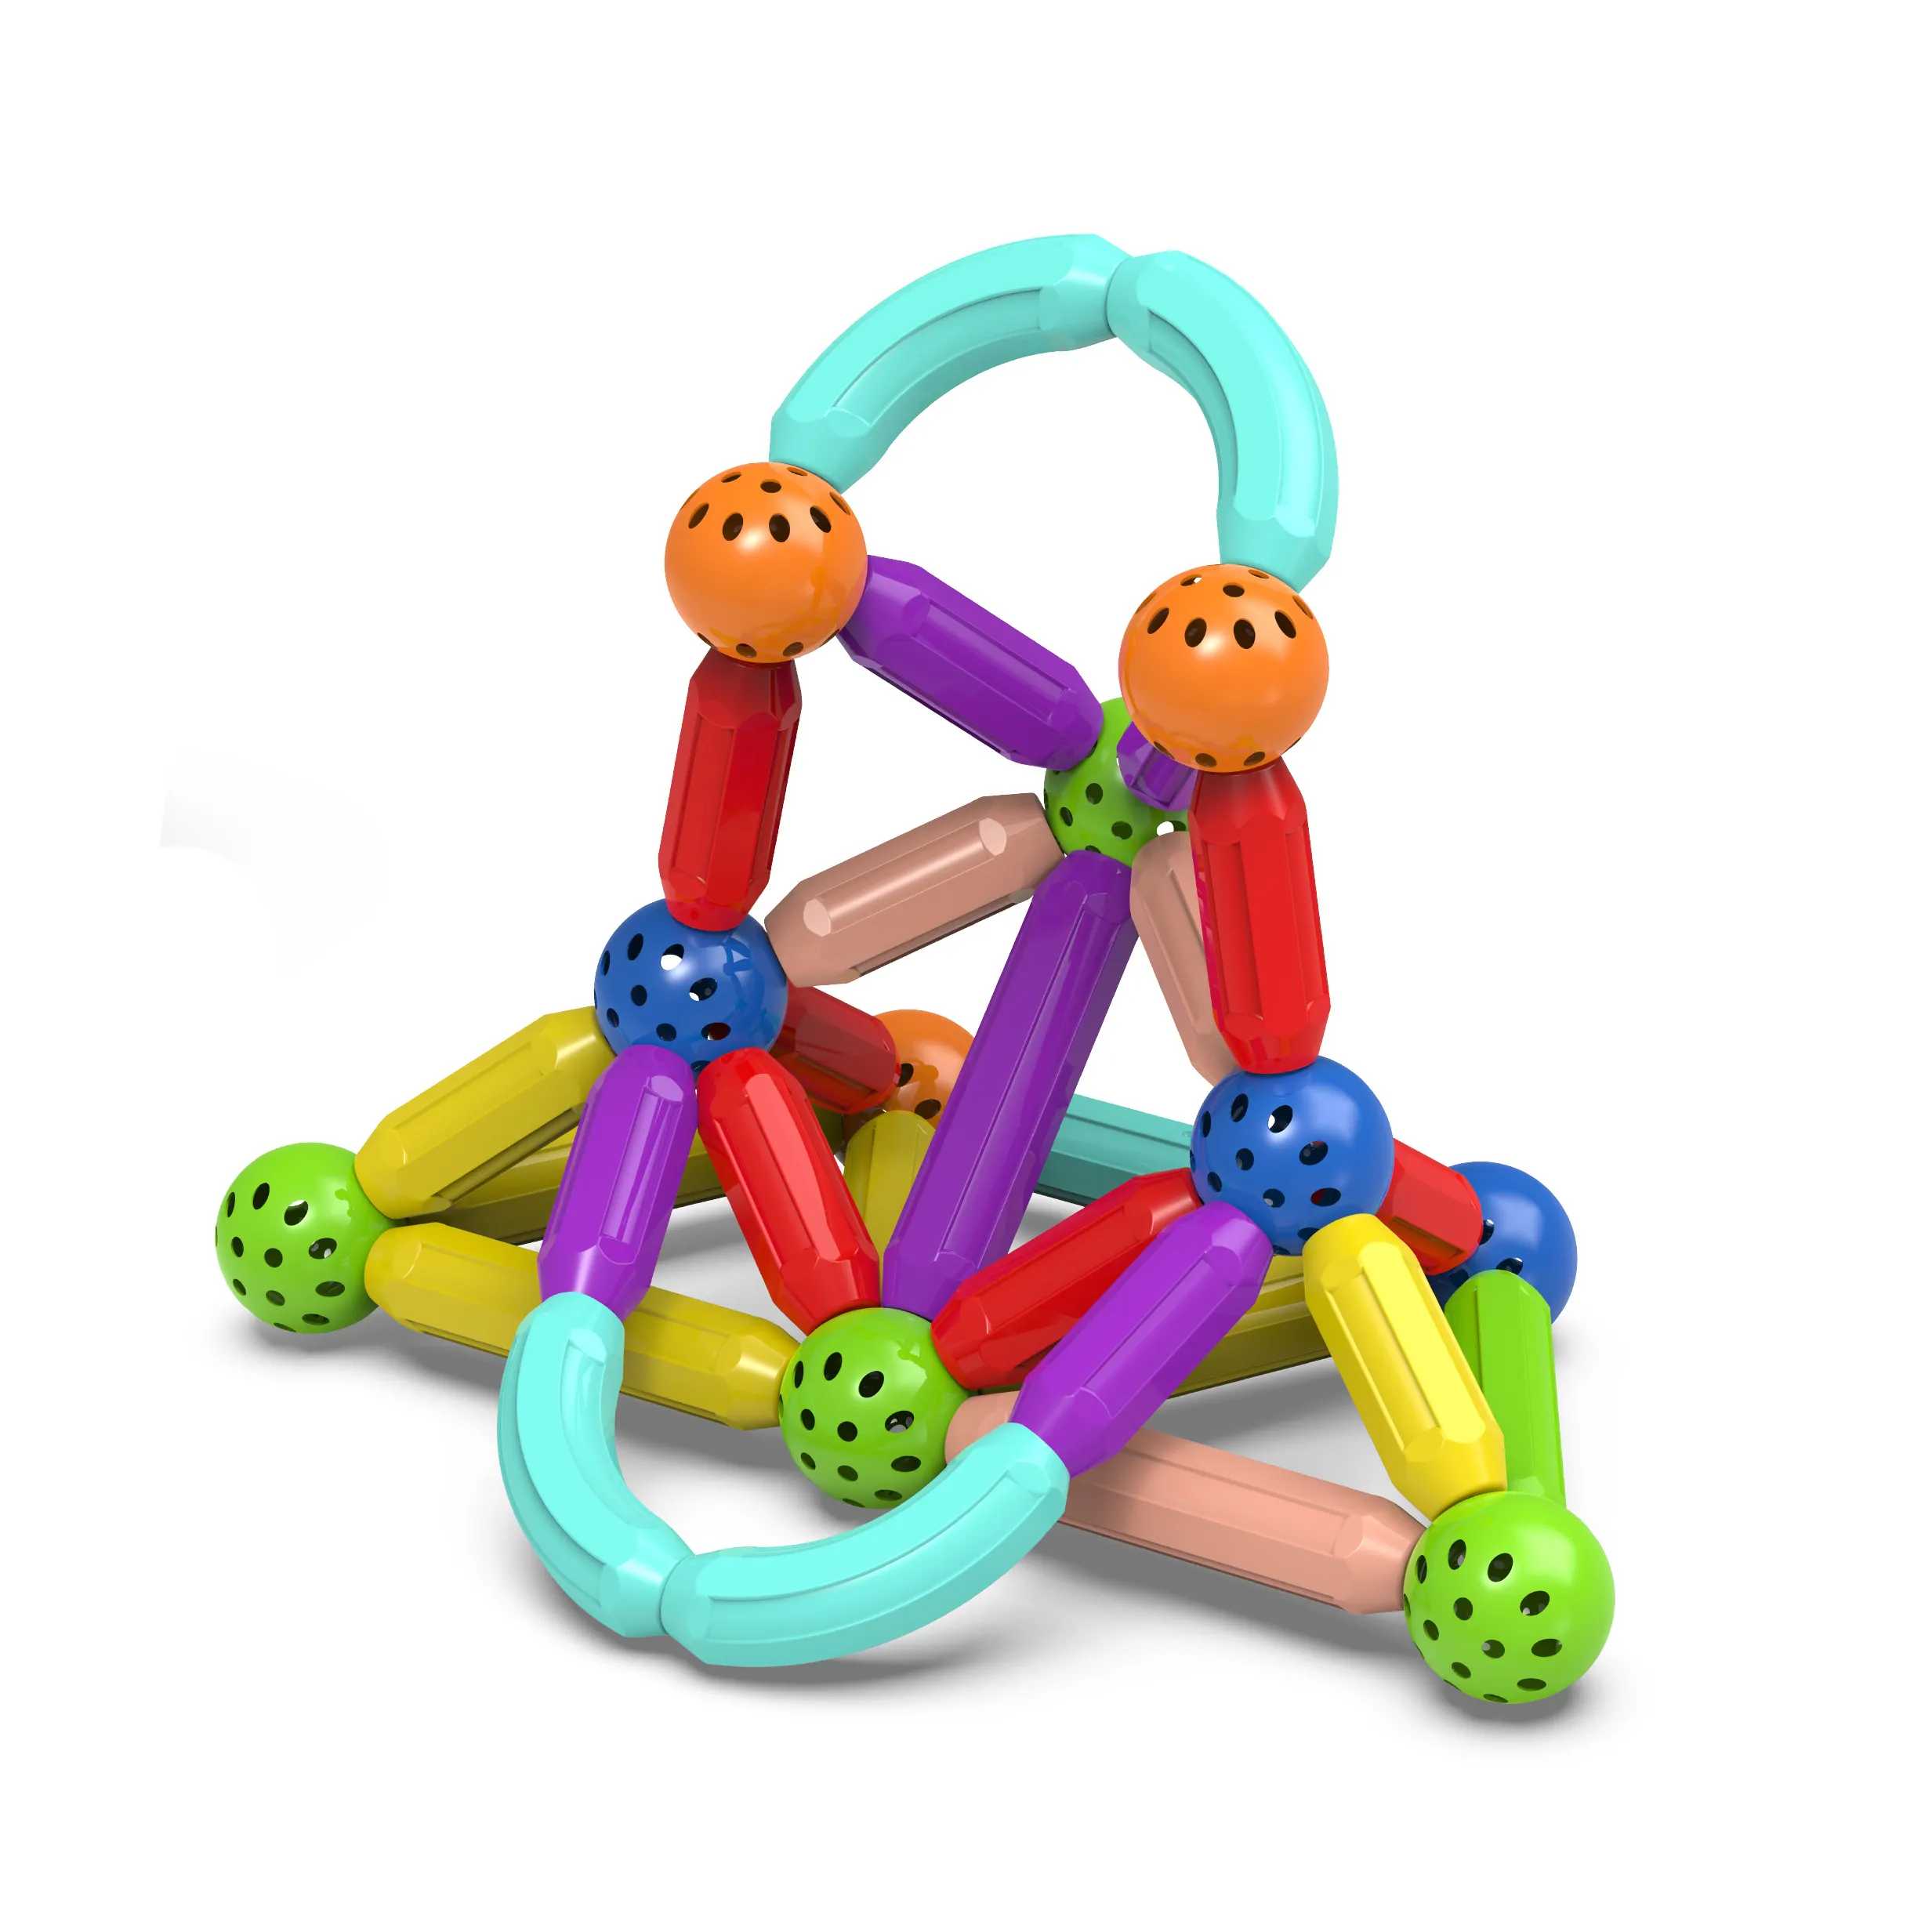 Pädagogische Kunststoff konstruktion DIY bauen Bälle und Stangen für Kinder flexible Magnet Stiel Spielzeug